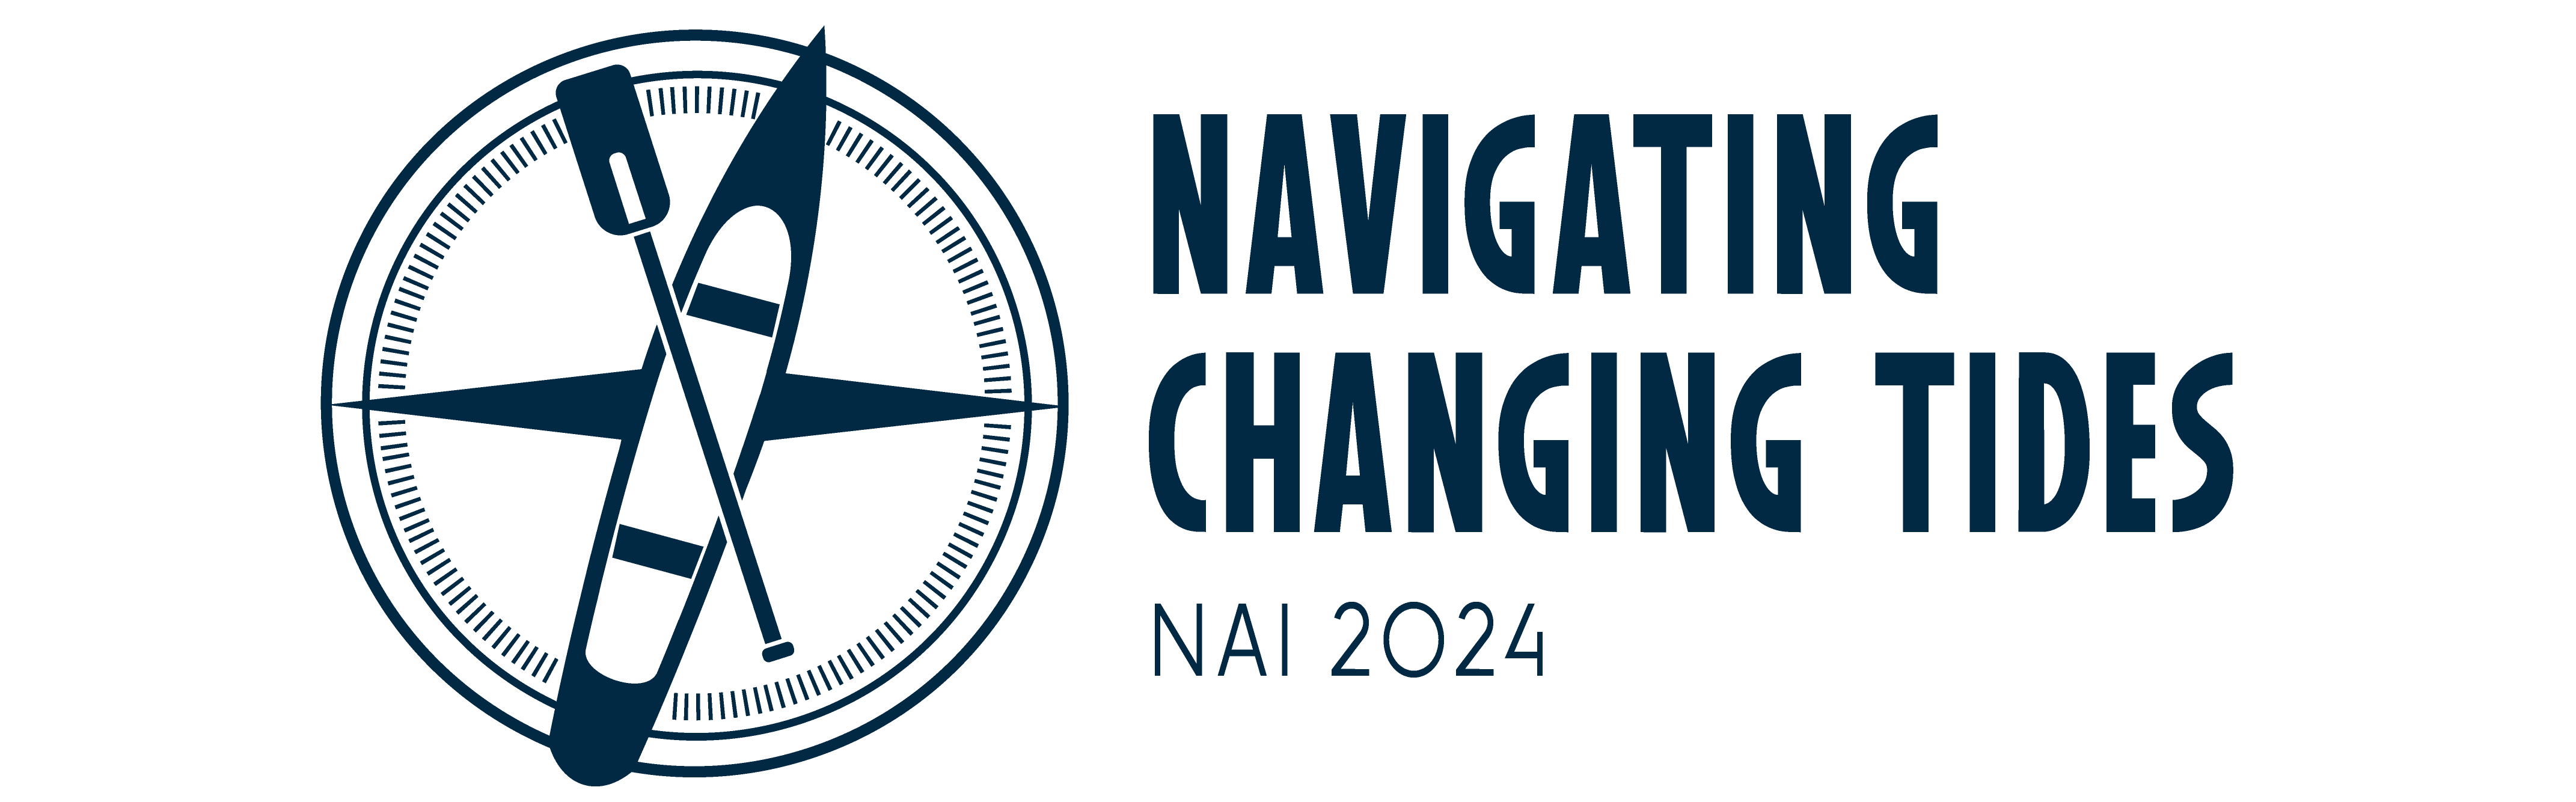 NAI 2024 Logo